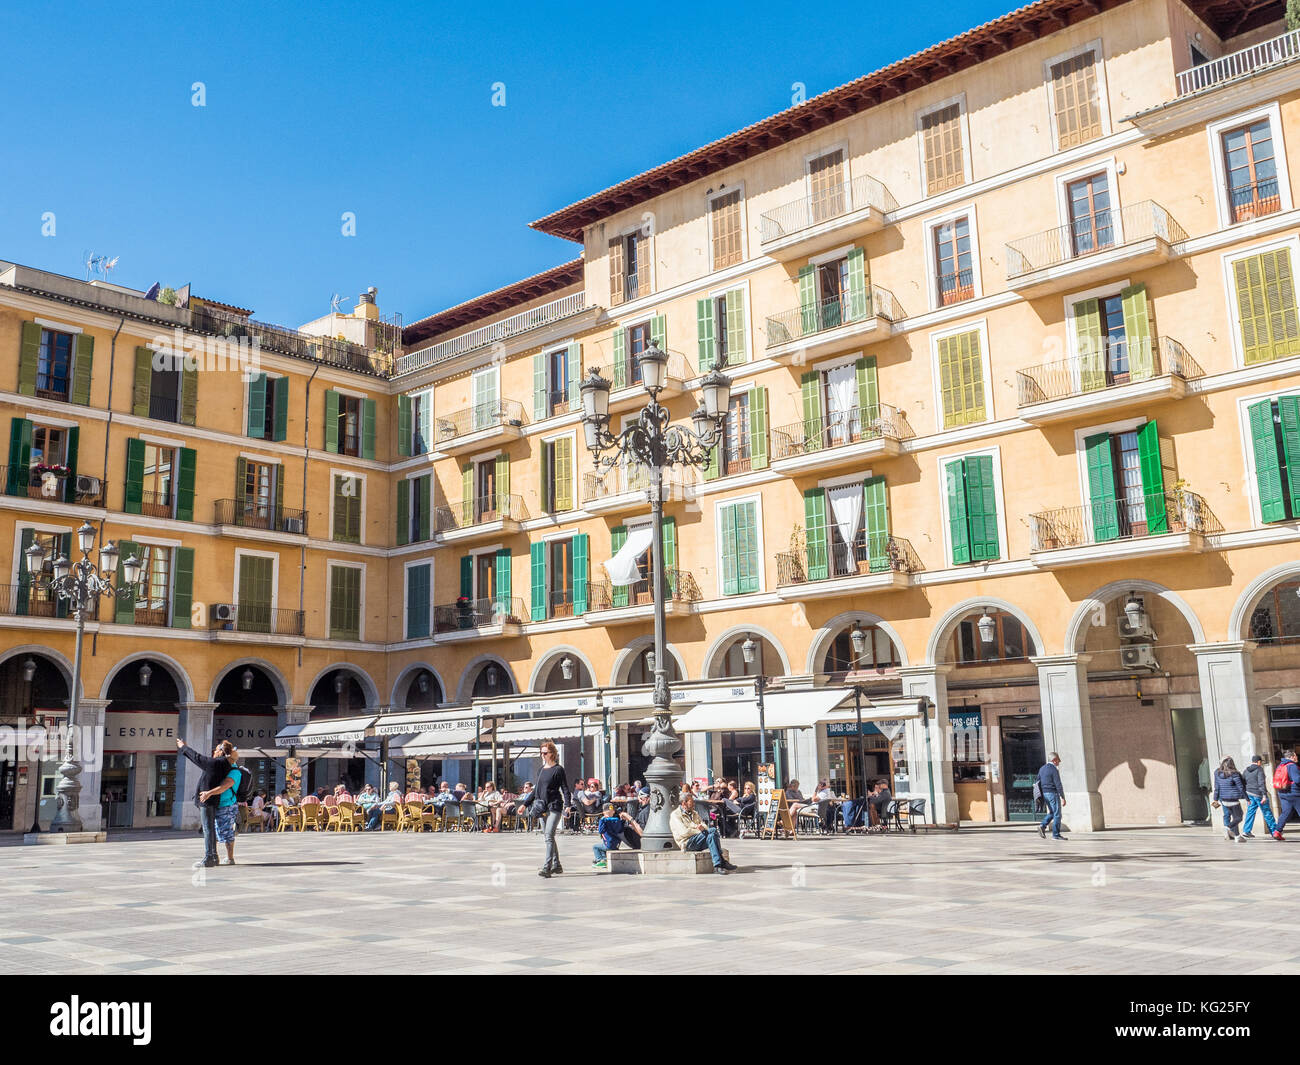 Ein City Plaza, Palma, Mallorca, Balearen, Spanien, Mittelmeer, Europa Stockfoto